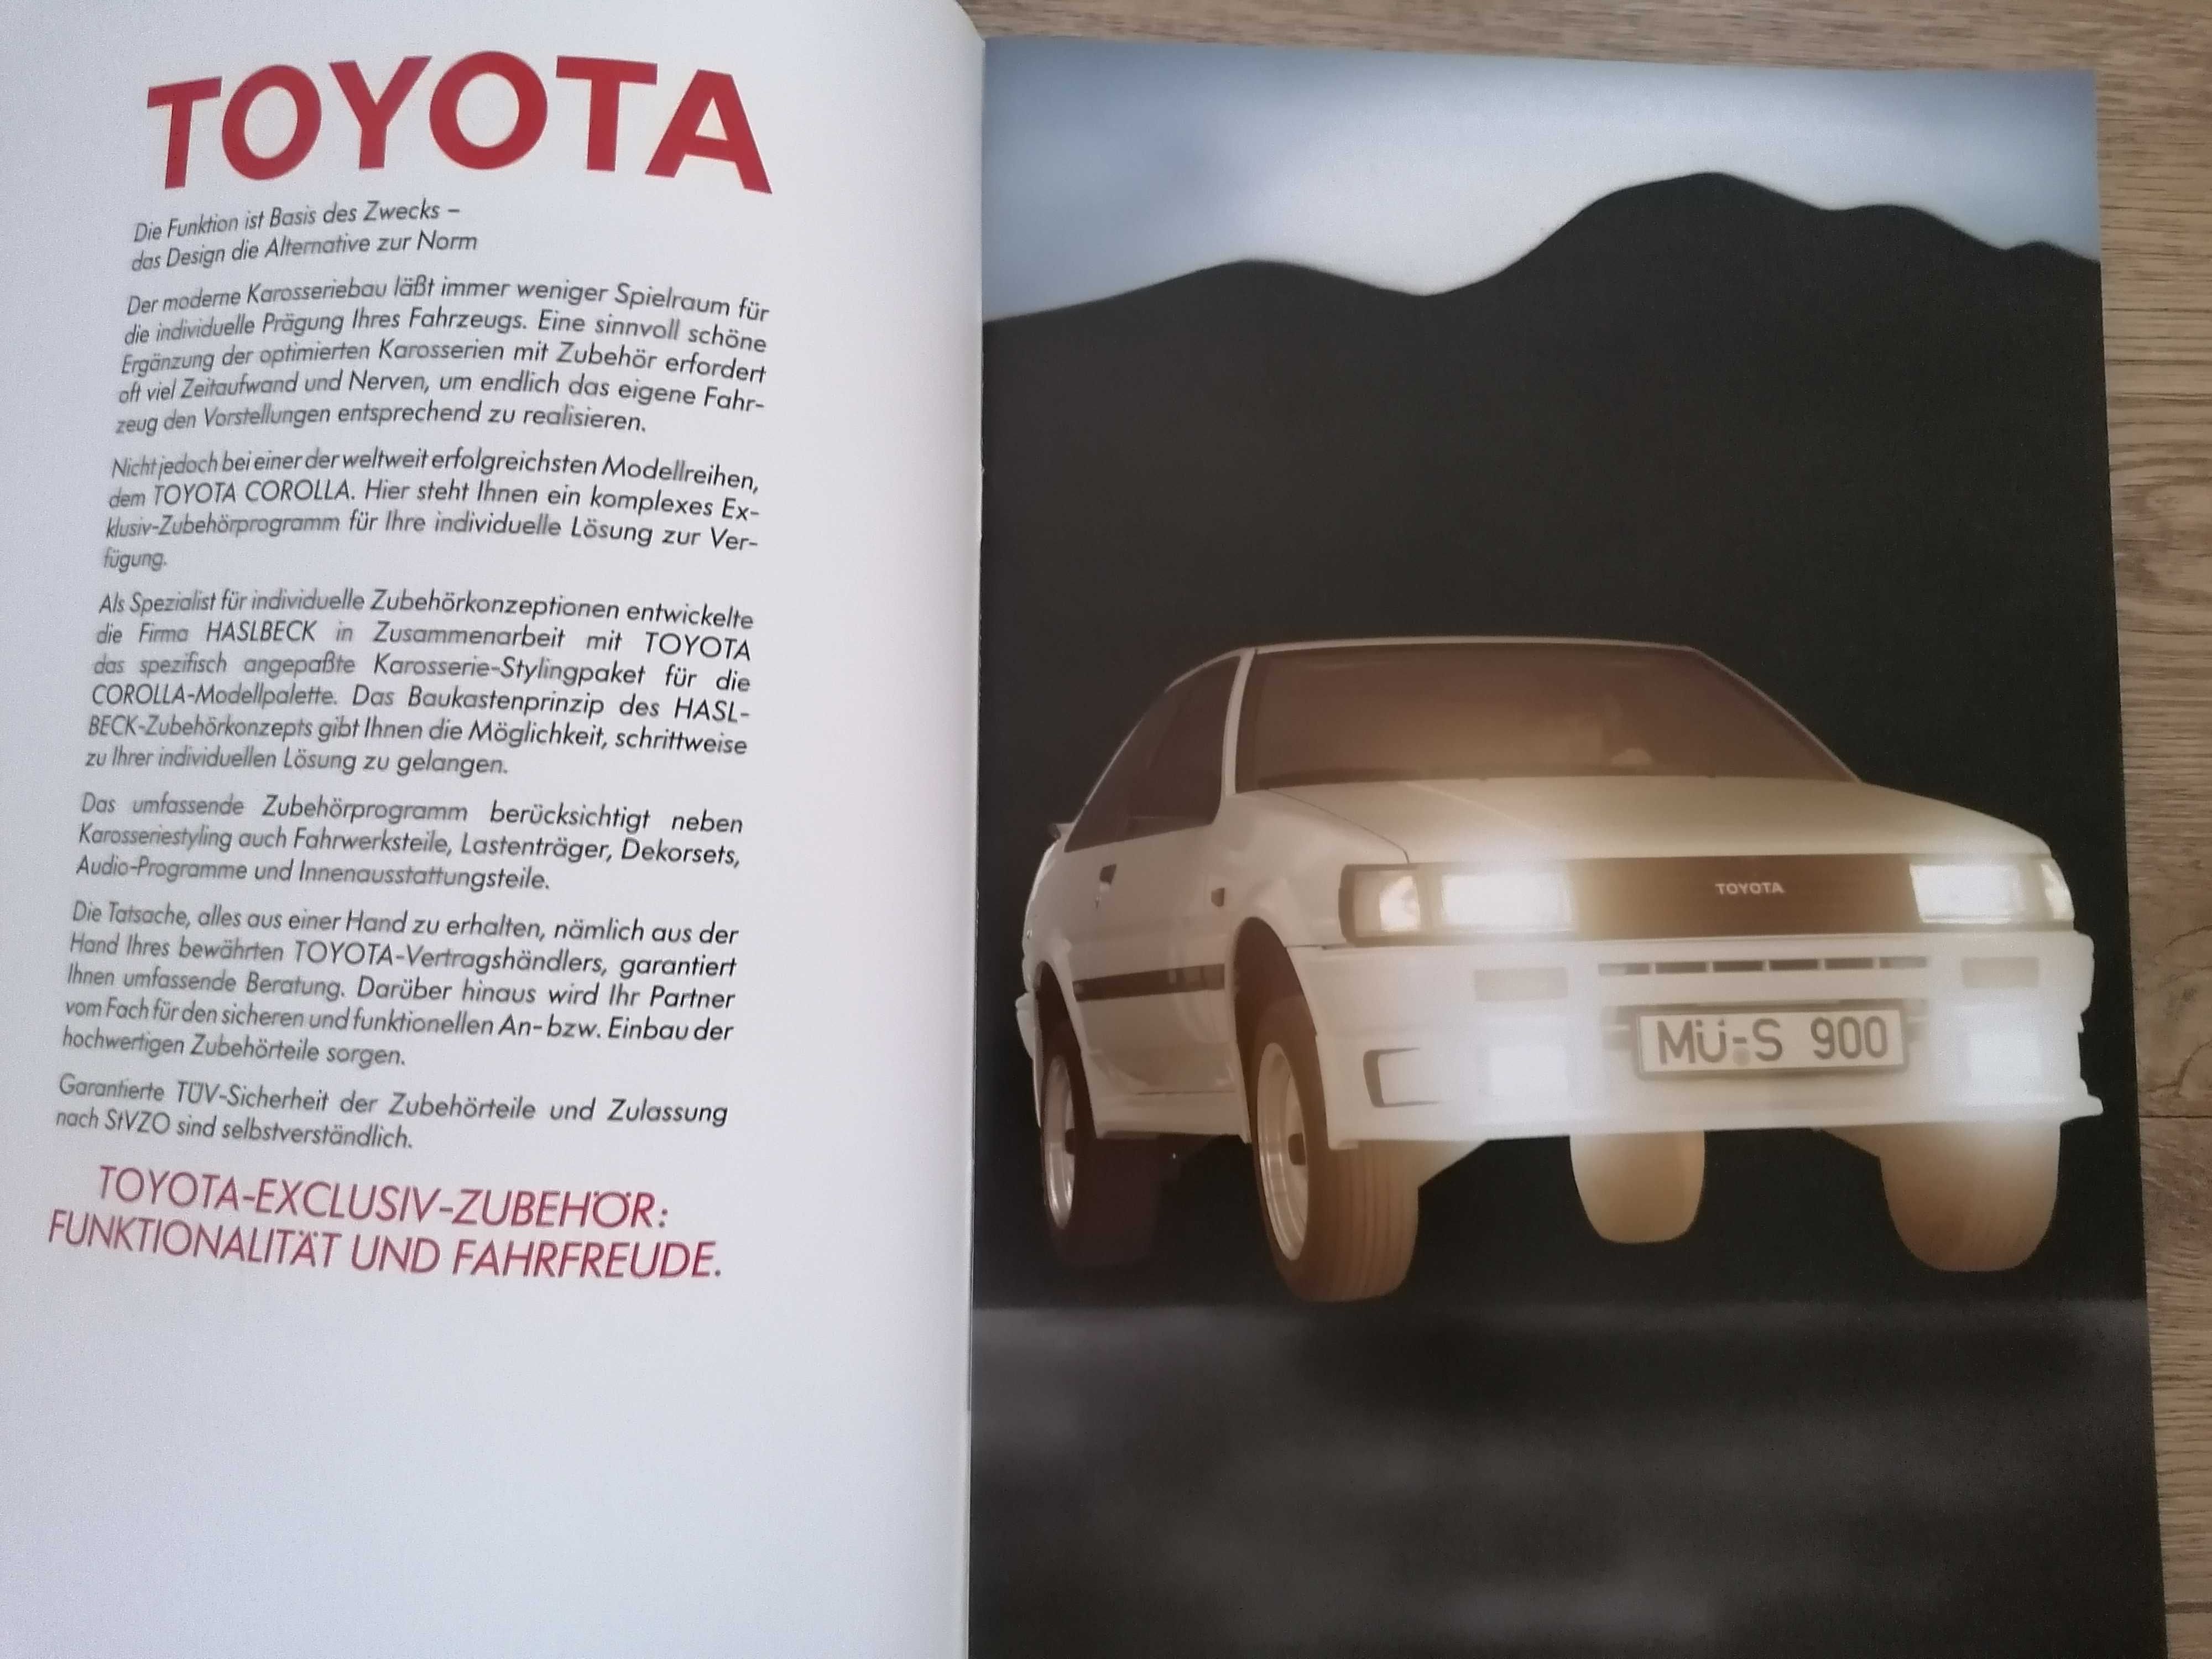 Prospekt Toyota Corolla wyposażenie dodatkowe,tuning.